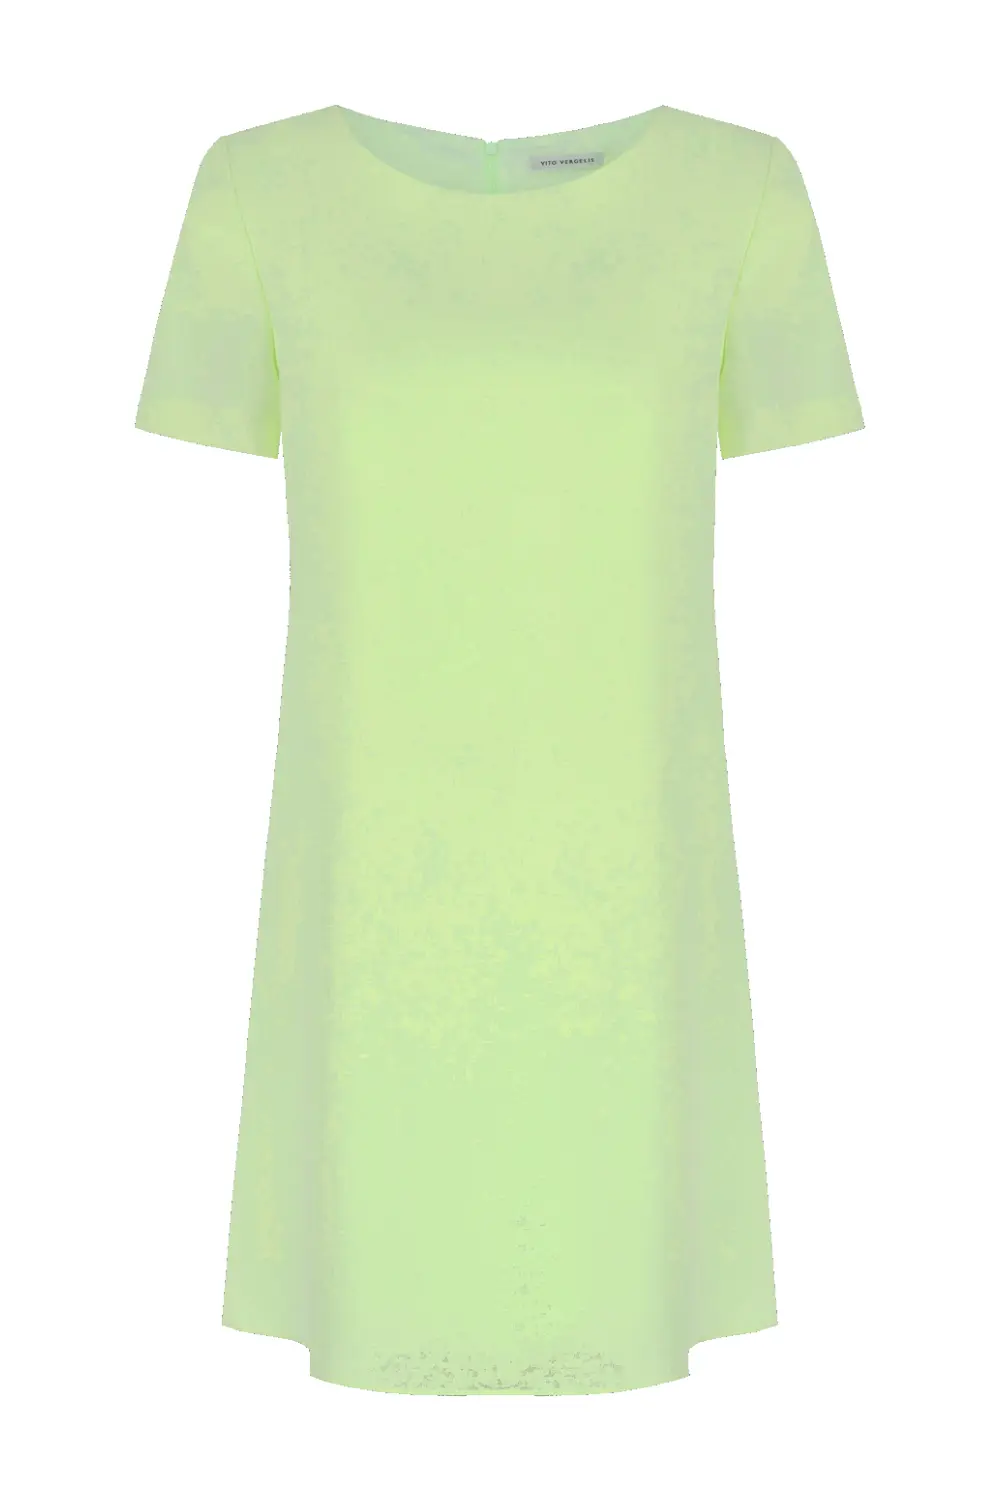 Prosta sukienka zielona z krótkim rękawem polska marka Vito Vergelis